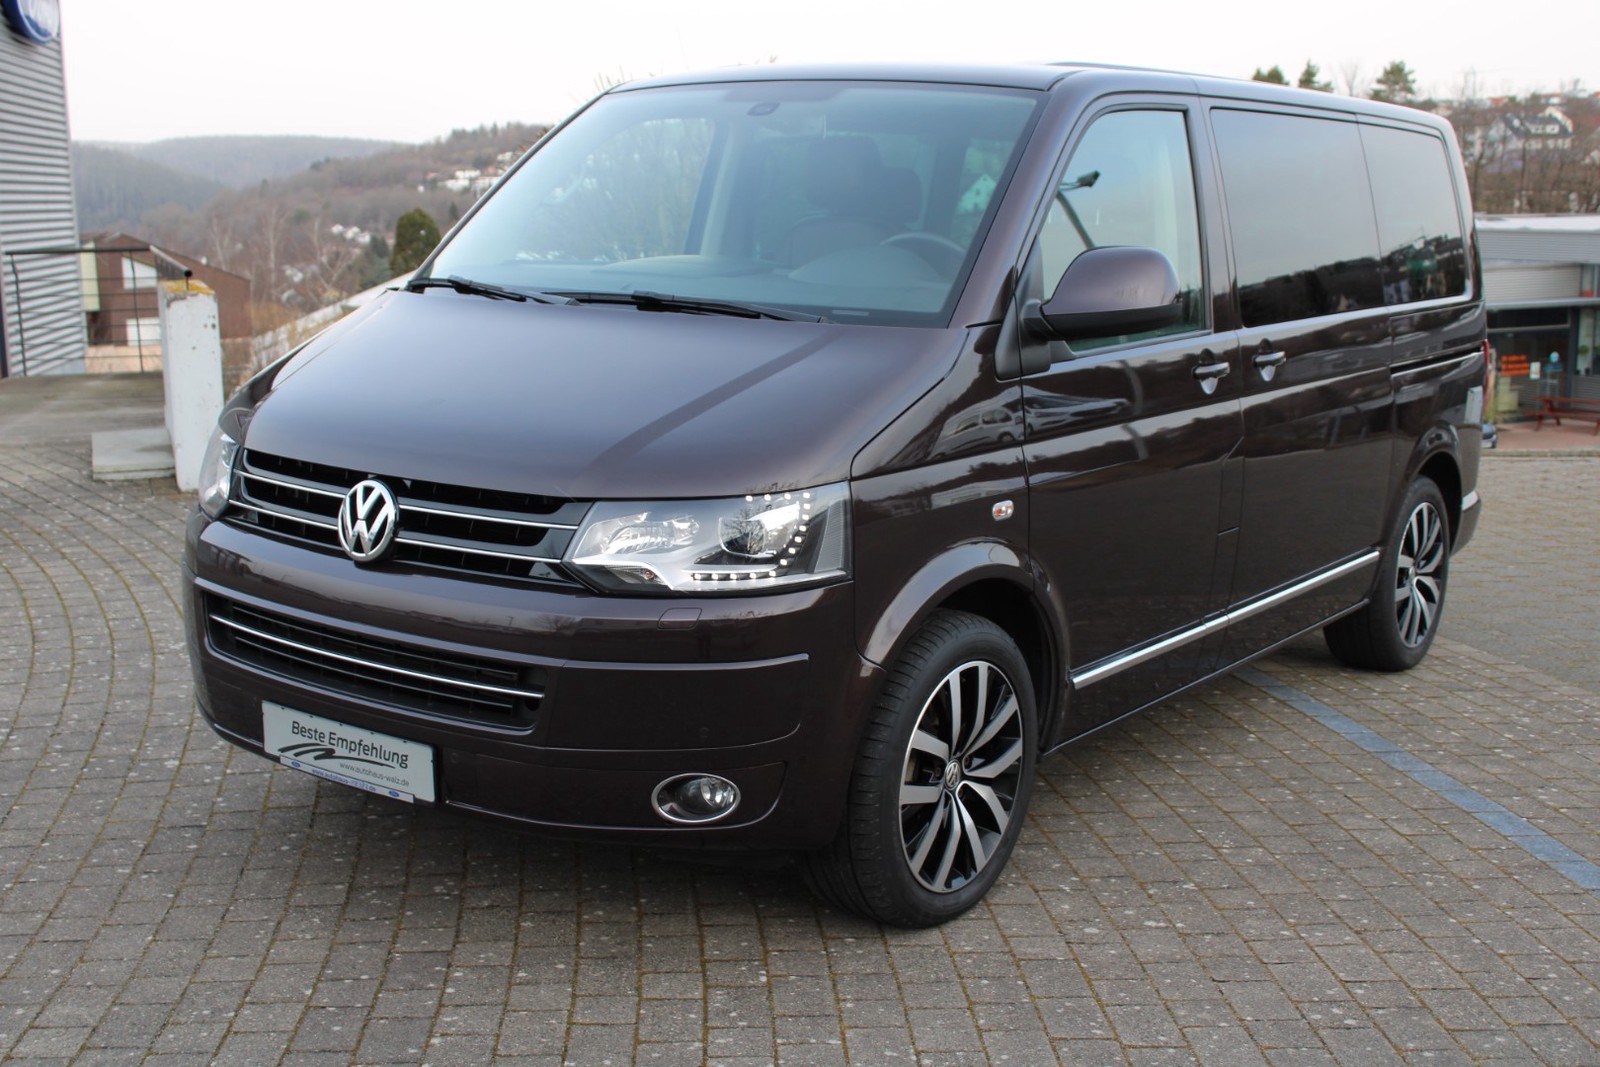 Volkswagen T5 Multivan gebraucht kaufen in Düsseldorf Preis 20990 eur -  Int.Nr.: 2116 VERKAUFT